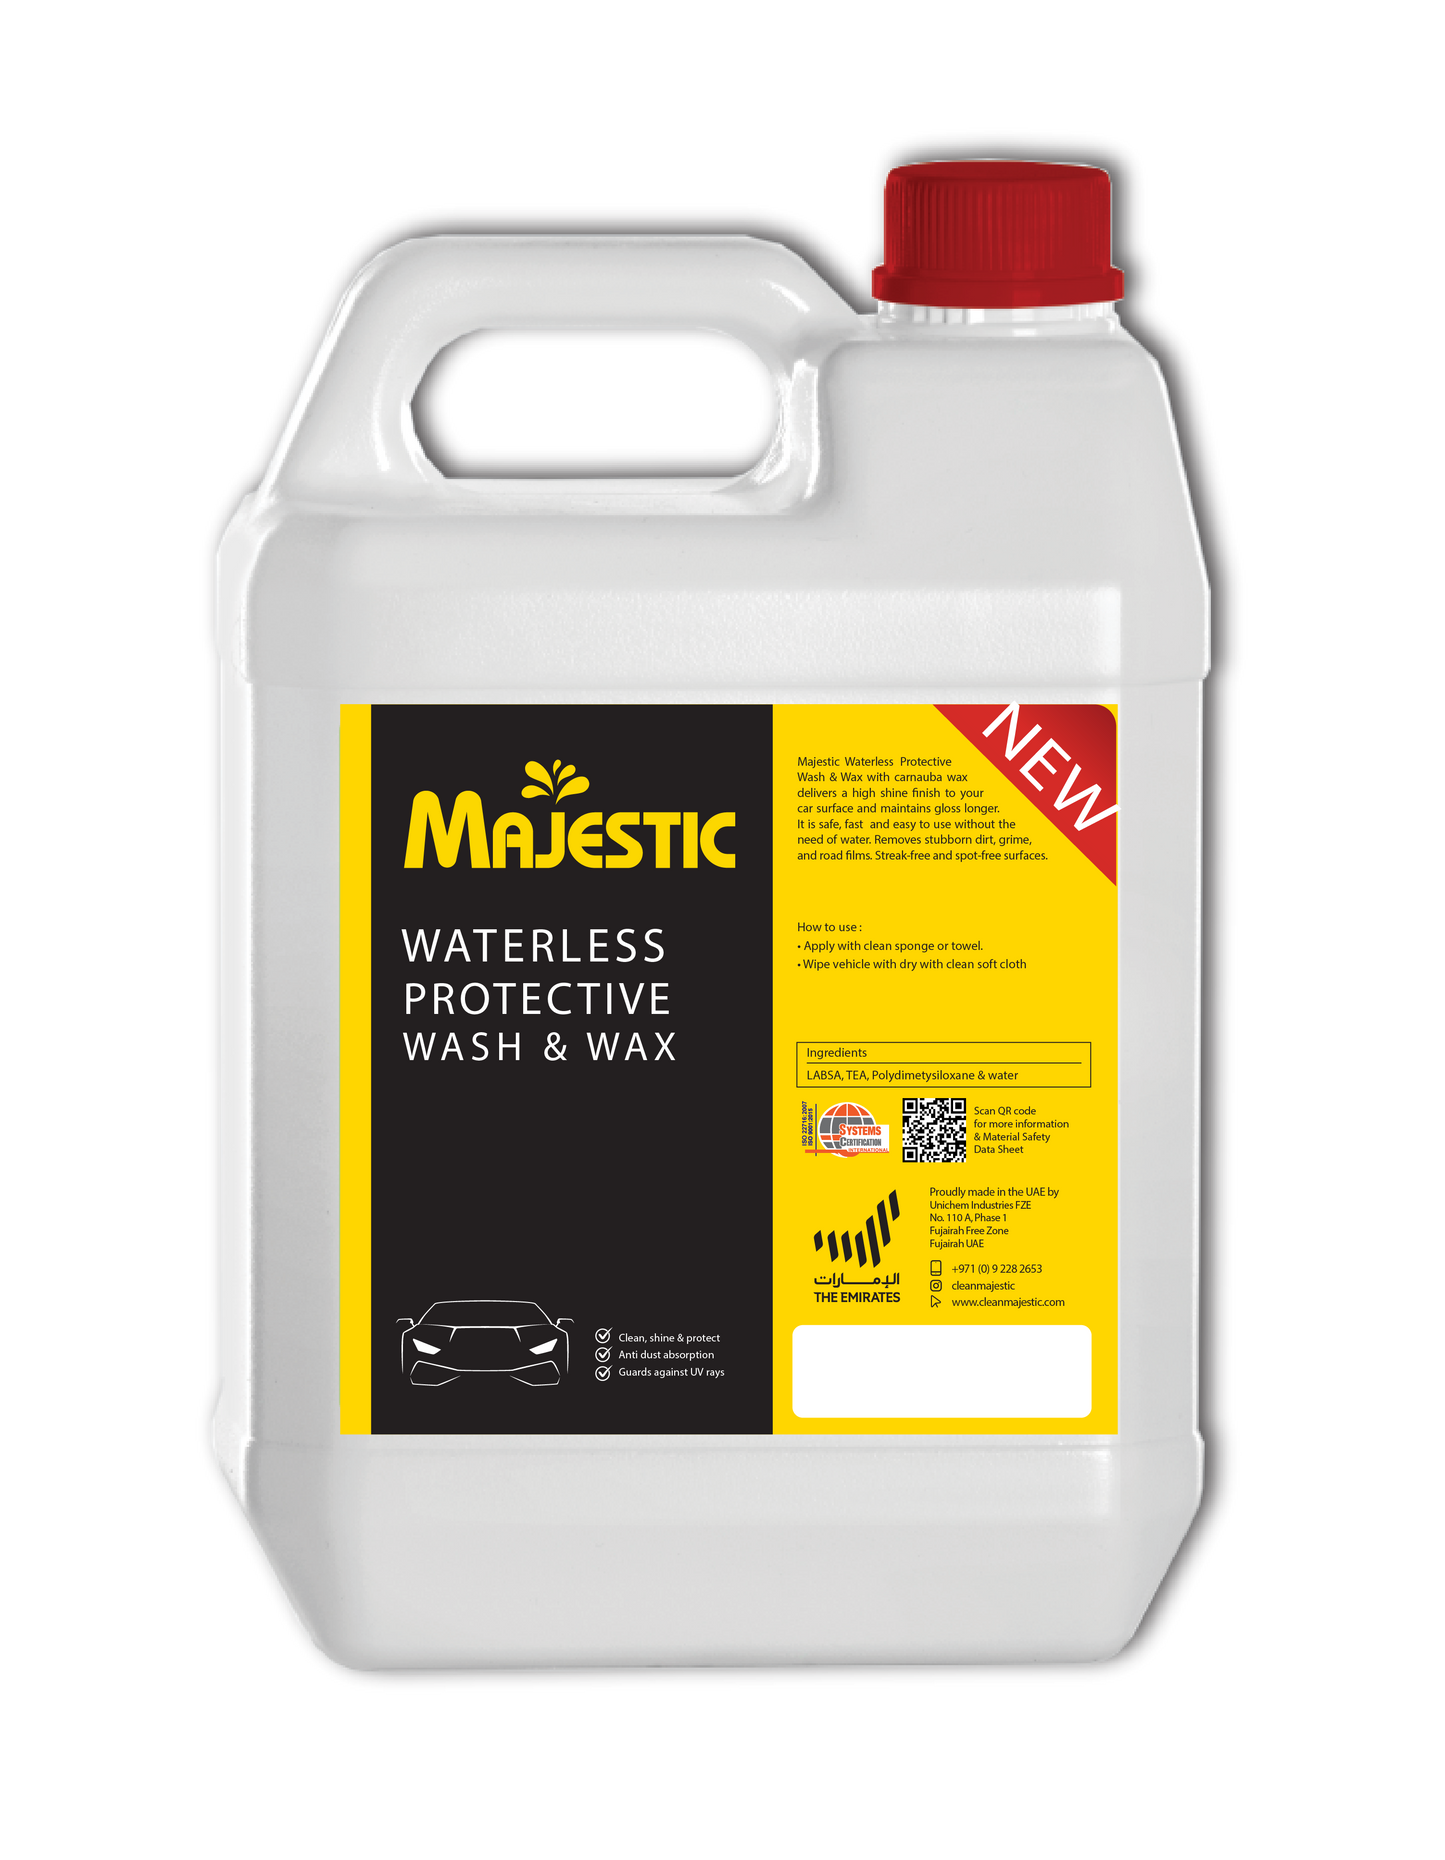 Majestic Waterless Protective Wash & Wax